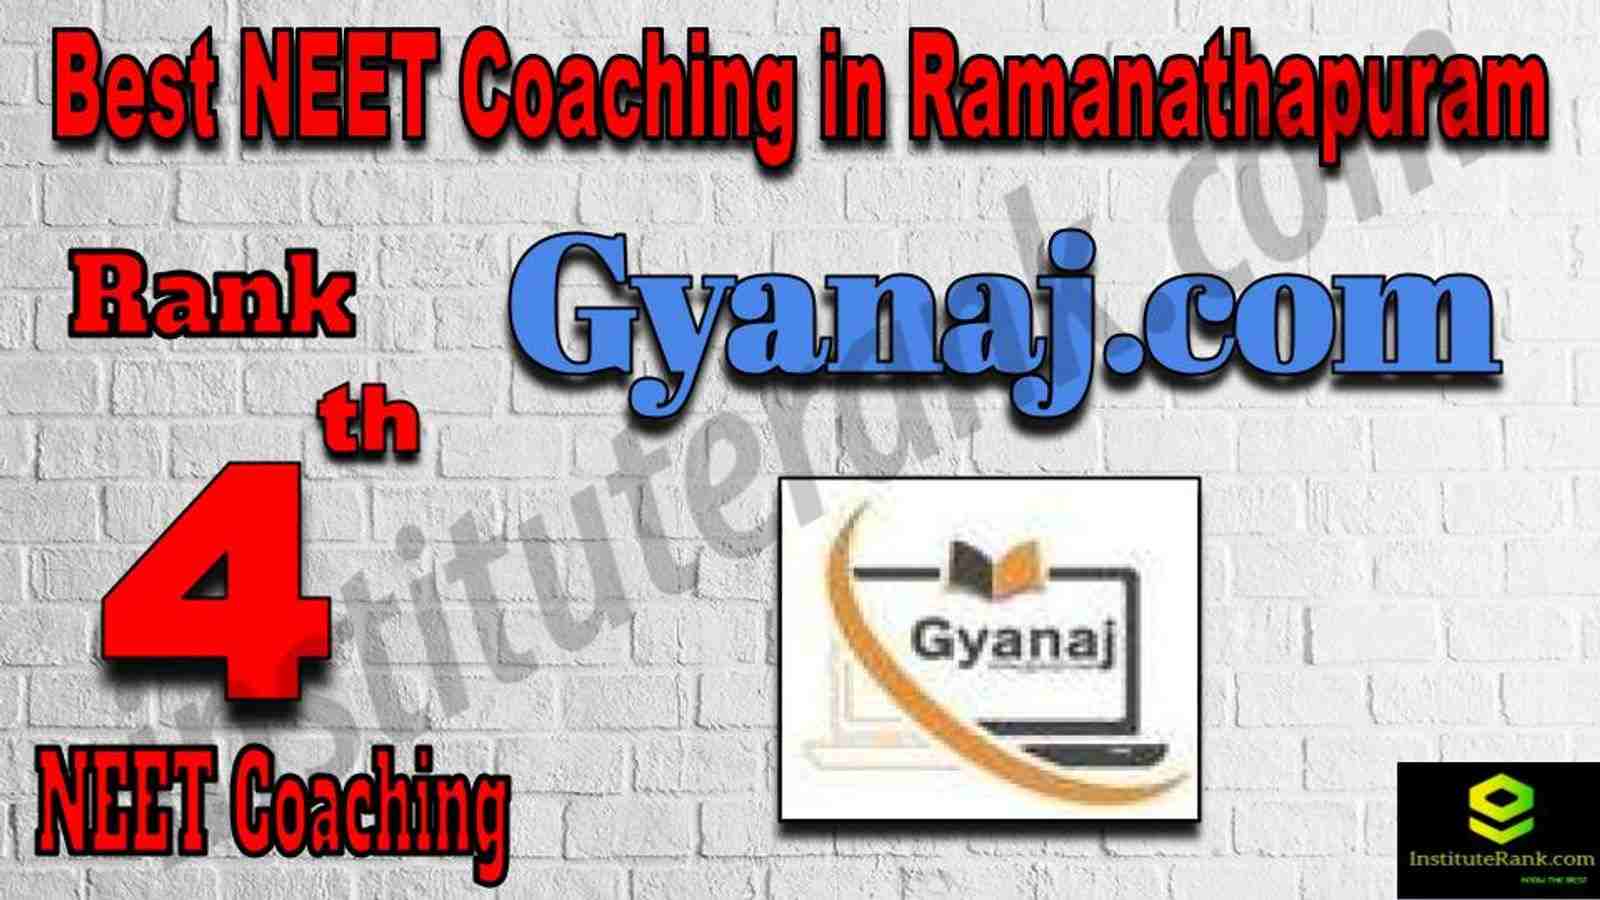 4th Best NEET Coaching in Ramanathapuram